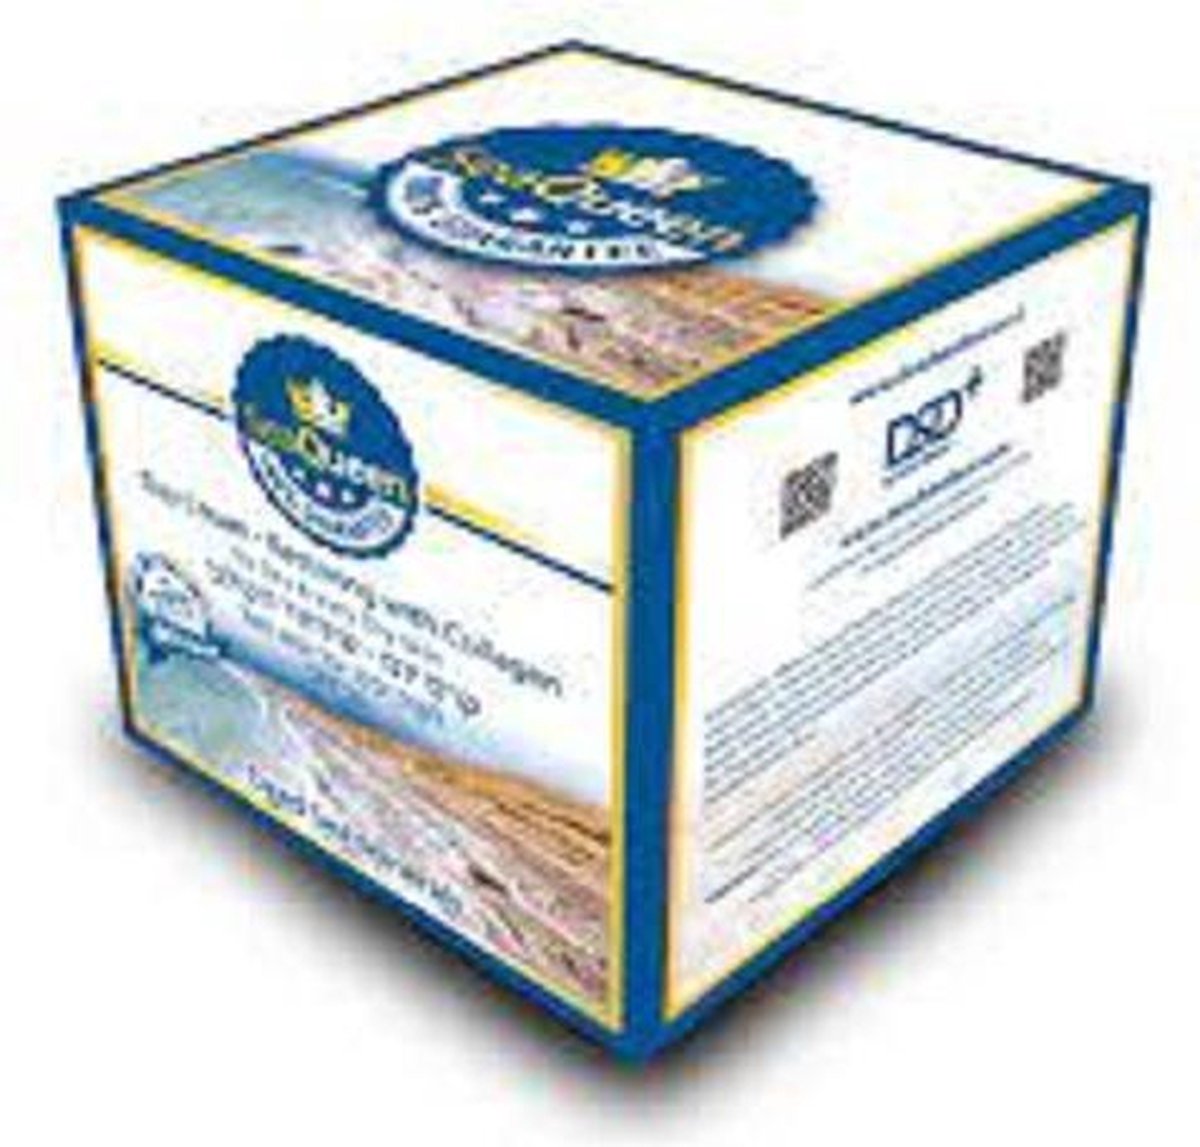 SeaQueen - Dead Sea Minerals Day Cream - Restoring with Collagen for Dry Skin SPF 25 (Dode Zee Mineralen Dag Creme Collageen voor droge huid)